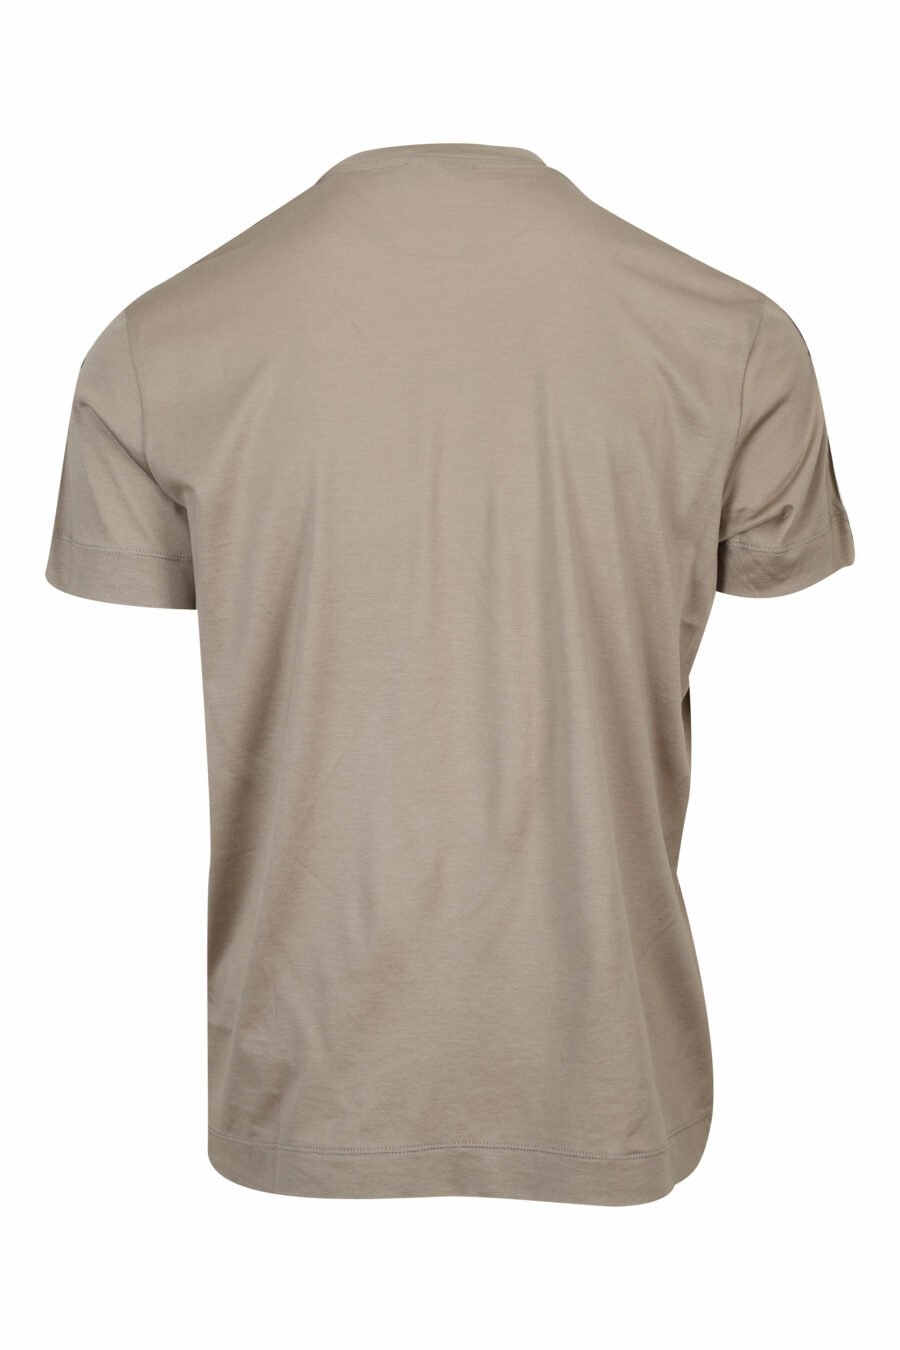 Camiseta beige con logo en hombros monocromático - 8057970958284 1